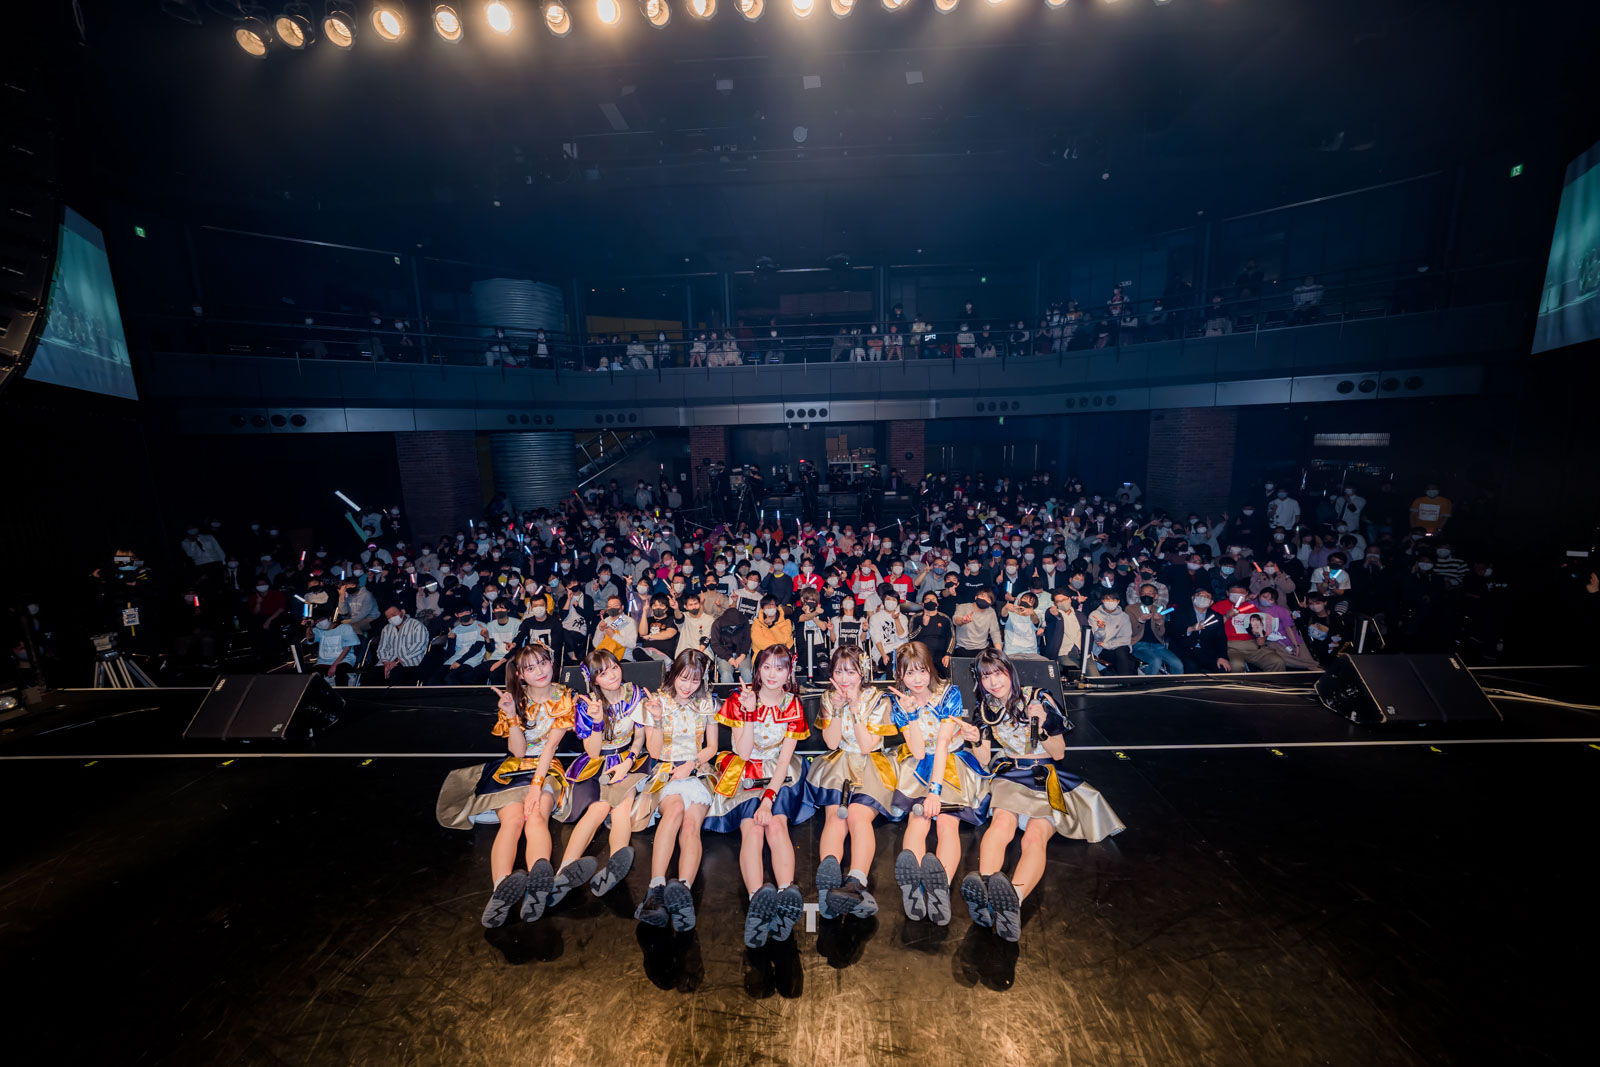 煌めく7人の姿に視線は釘付け。煌めき☆アンフォレント新体制お披露目公演をレポート!!!!!!!